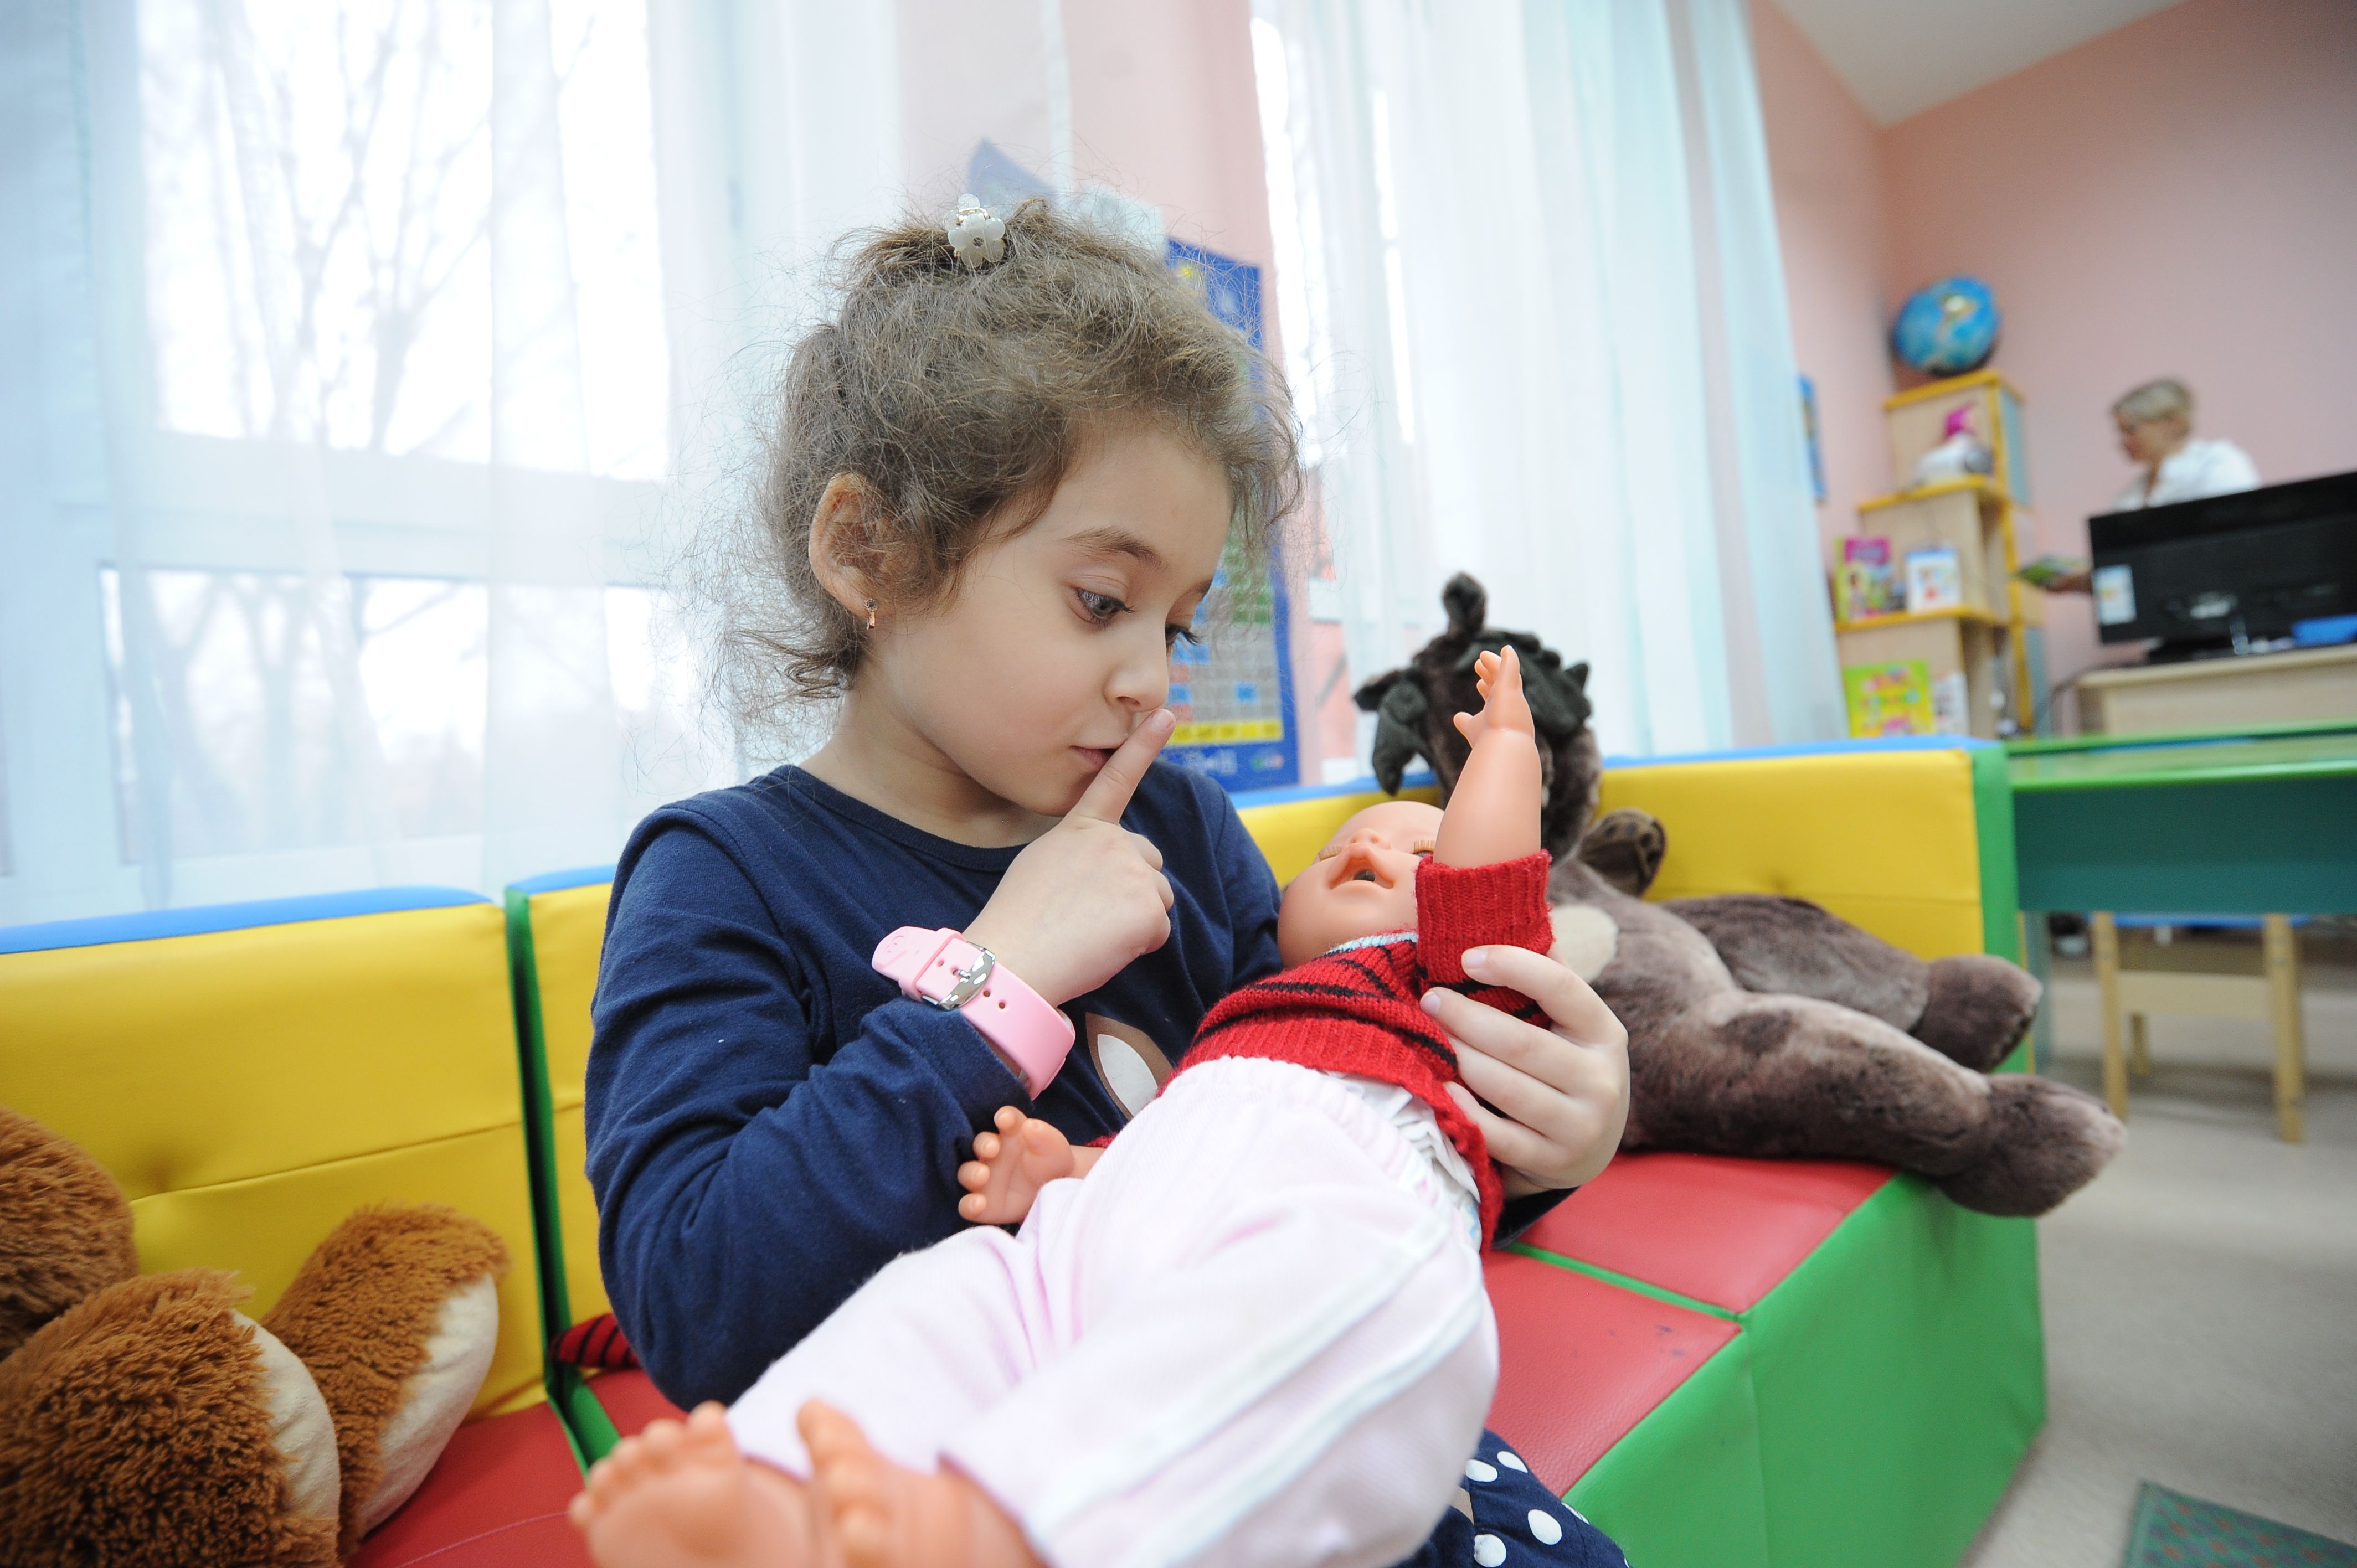 Открытие дополнительных детских садов ожидается в Новой Москве в 2019 году. Фото: Пелагия Замятина, «Вечерняя Москва»